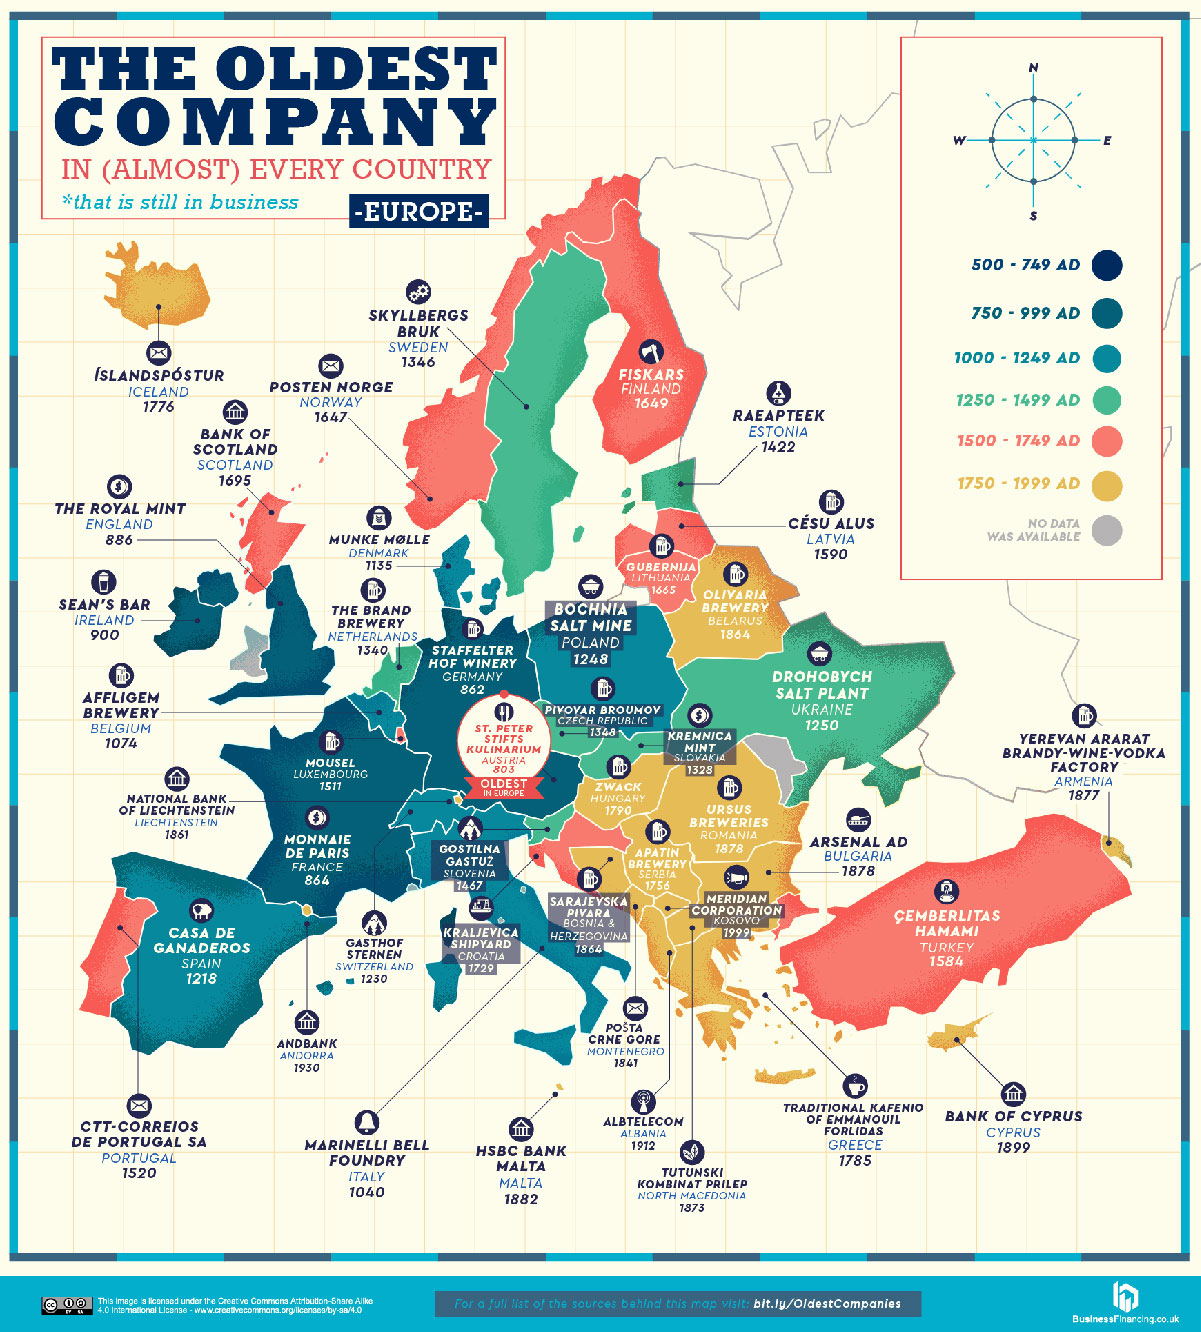 Le più vecchie aziende in Europa ancora in attività